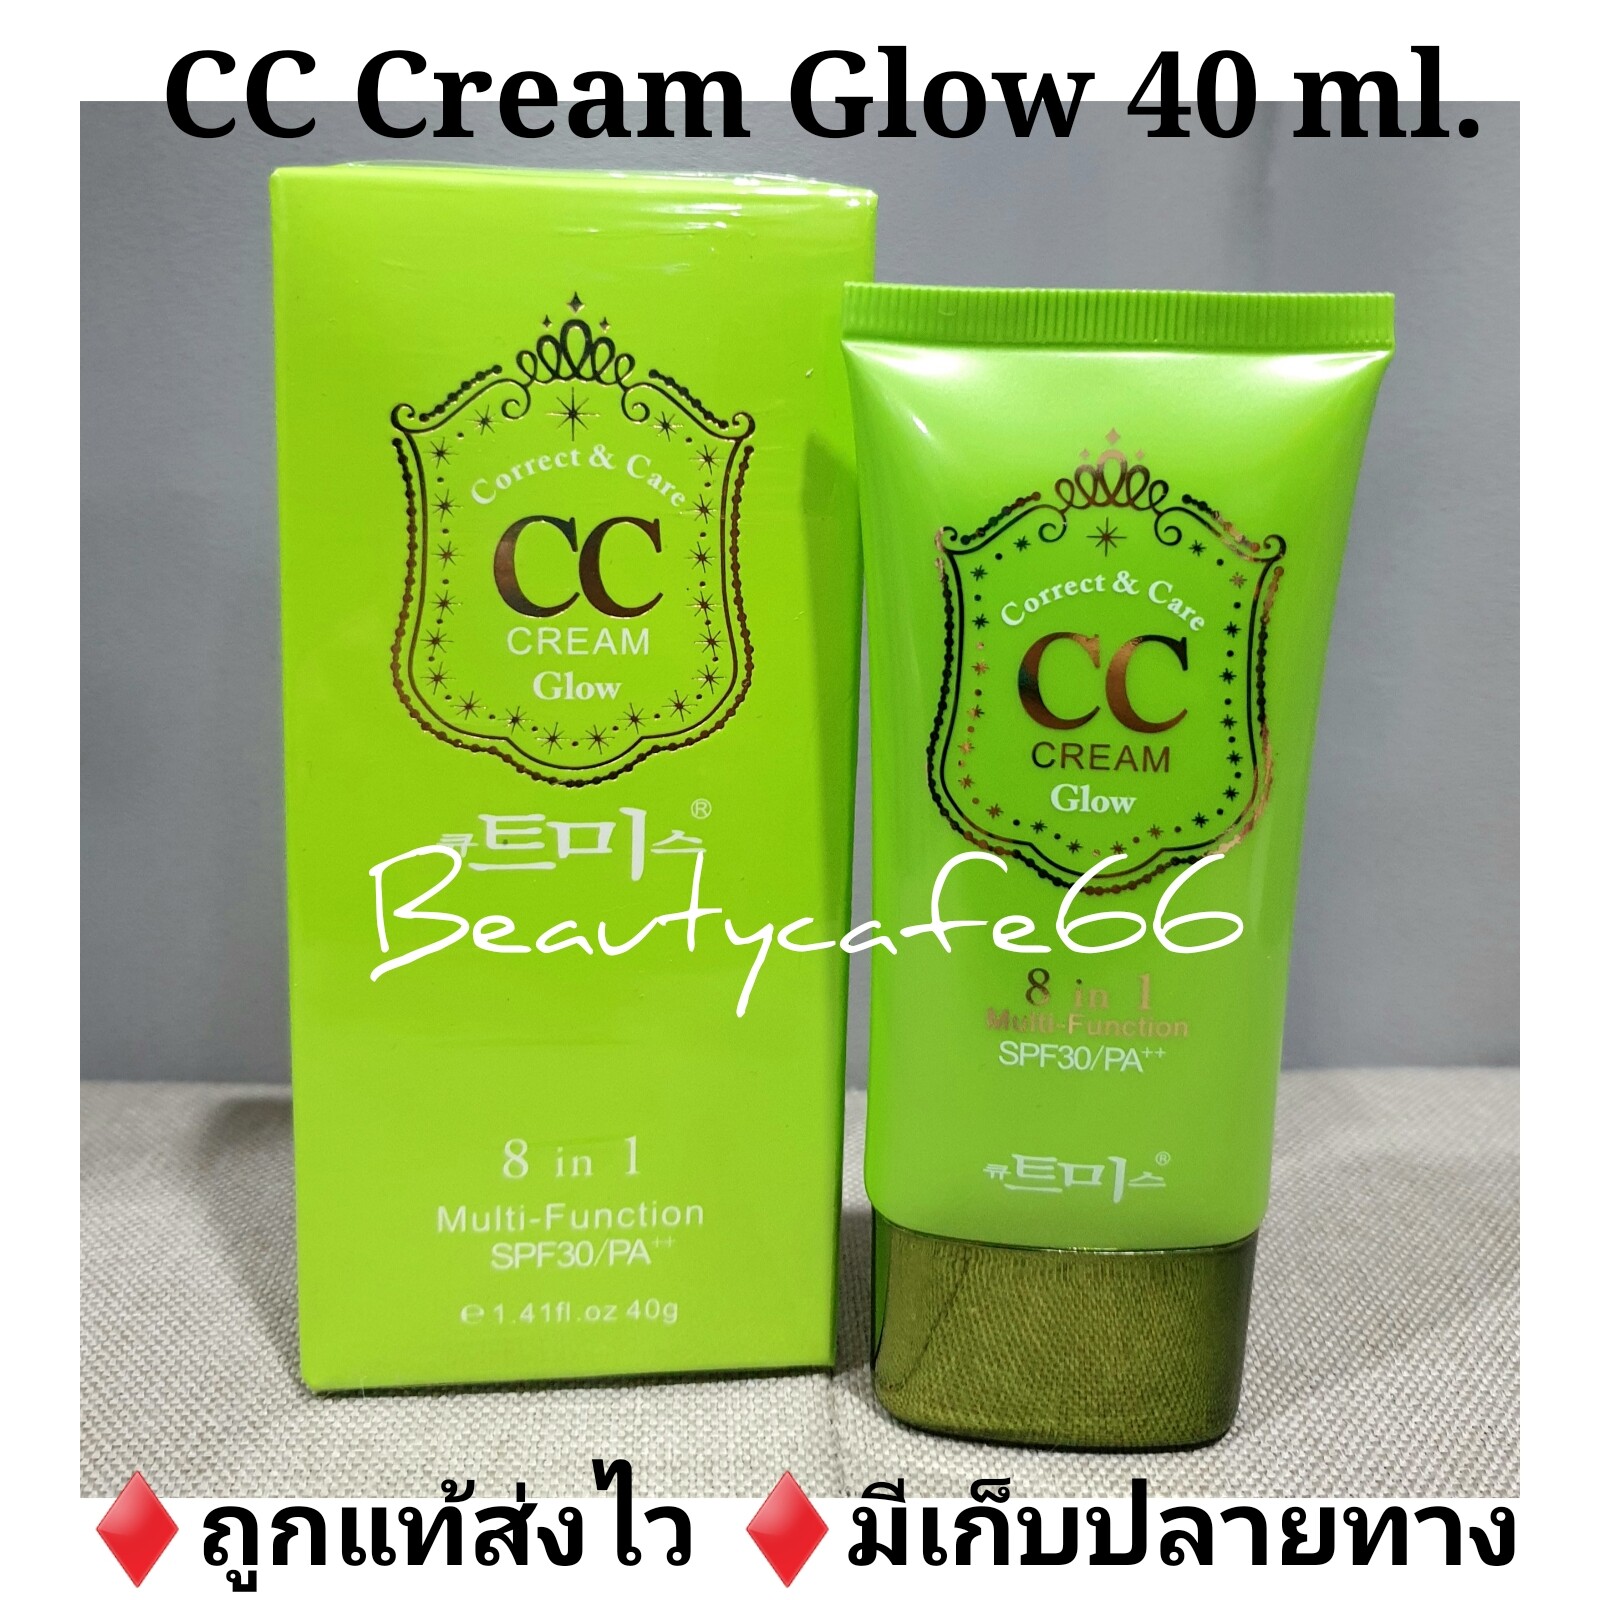 CC Cream Glow  ซีซีเกาหลี เนื้อสีเขียว CC Skin Care 40 ml. (1 หลอด) เบสเขียว Make Up Base  belov บีลอฟ